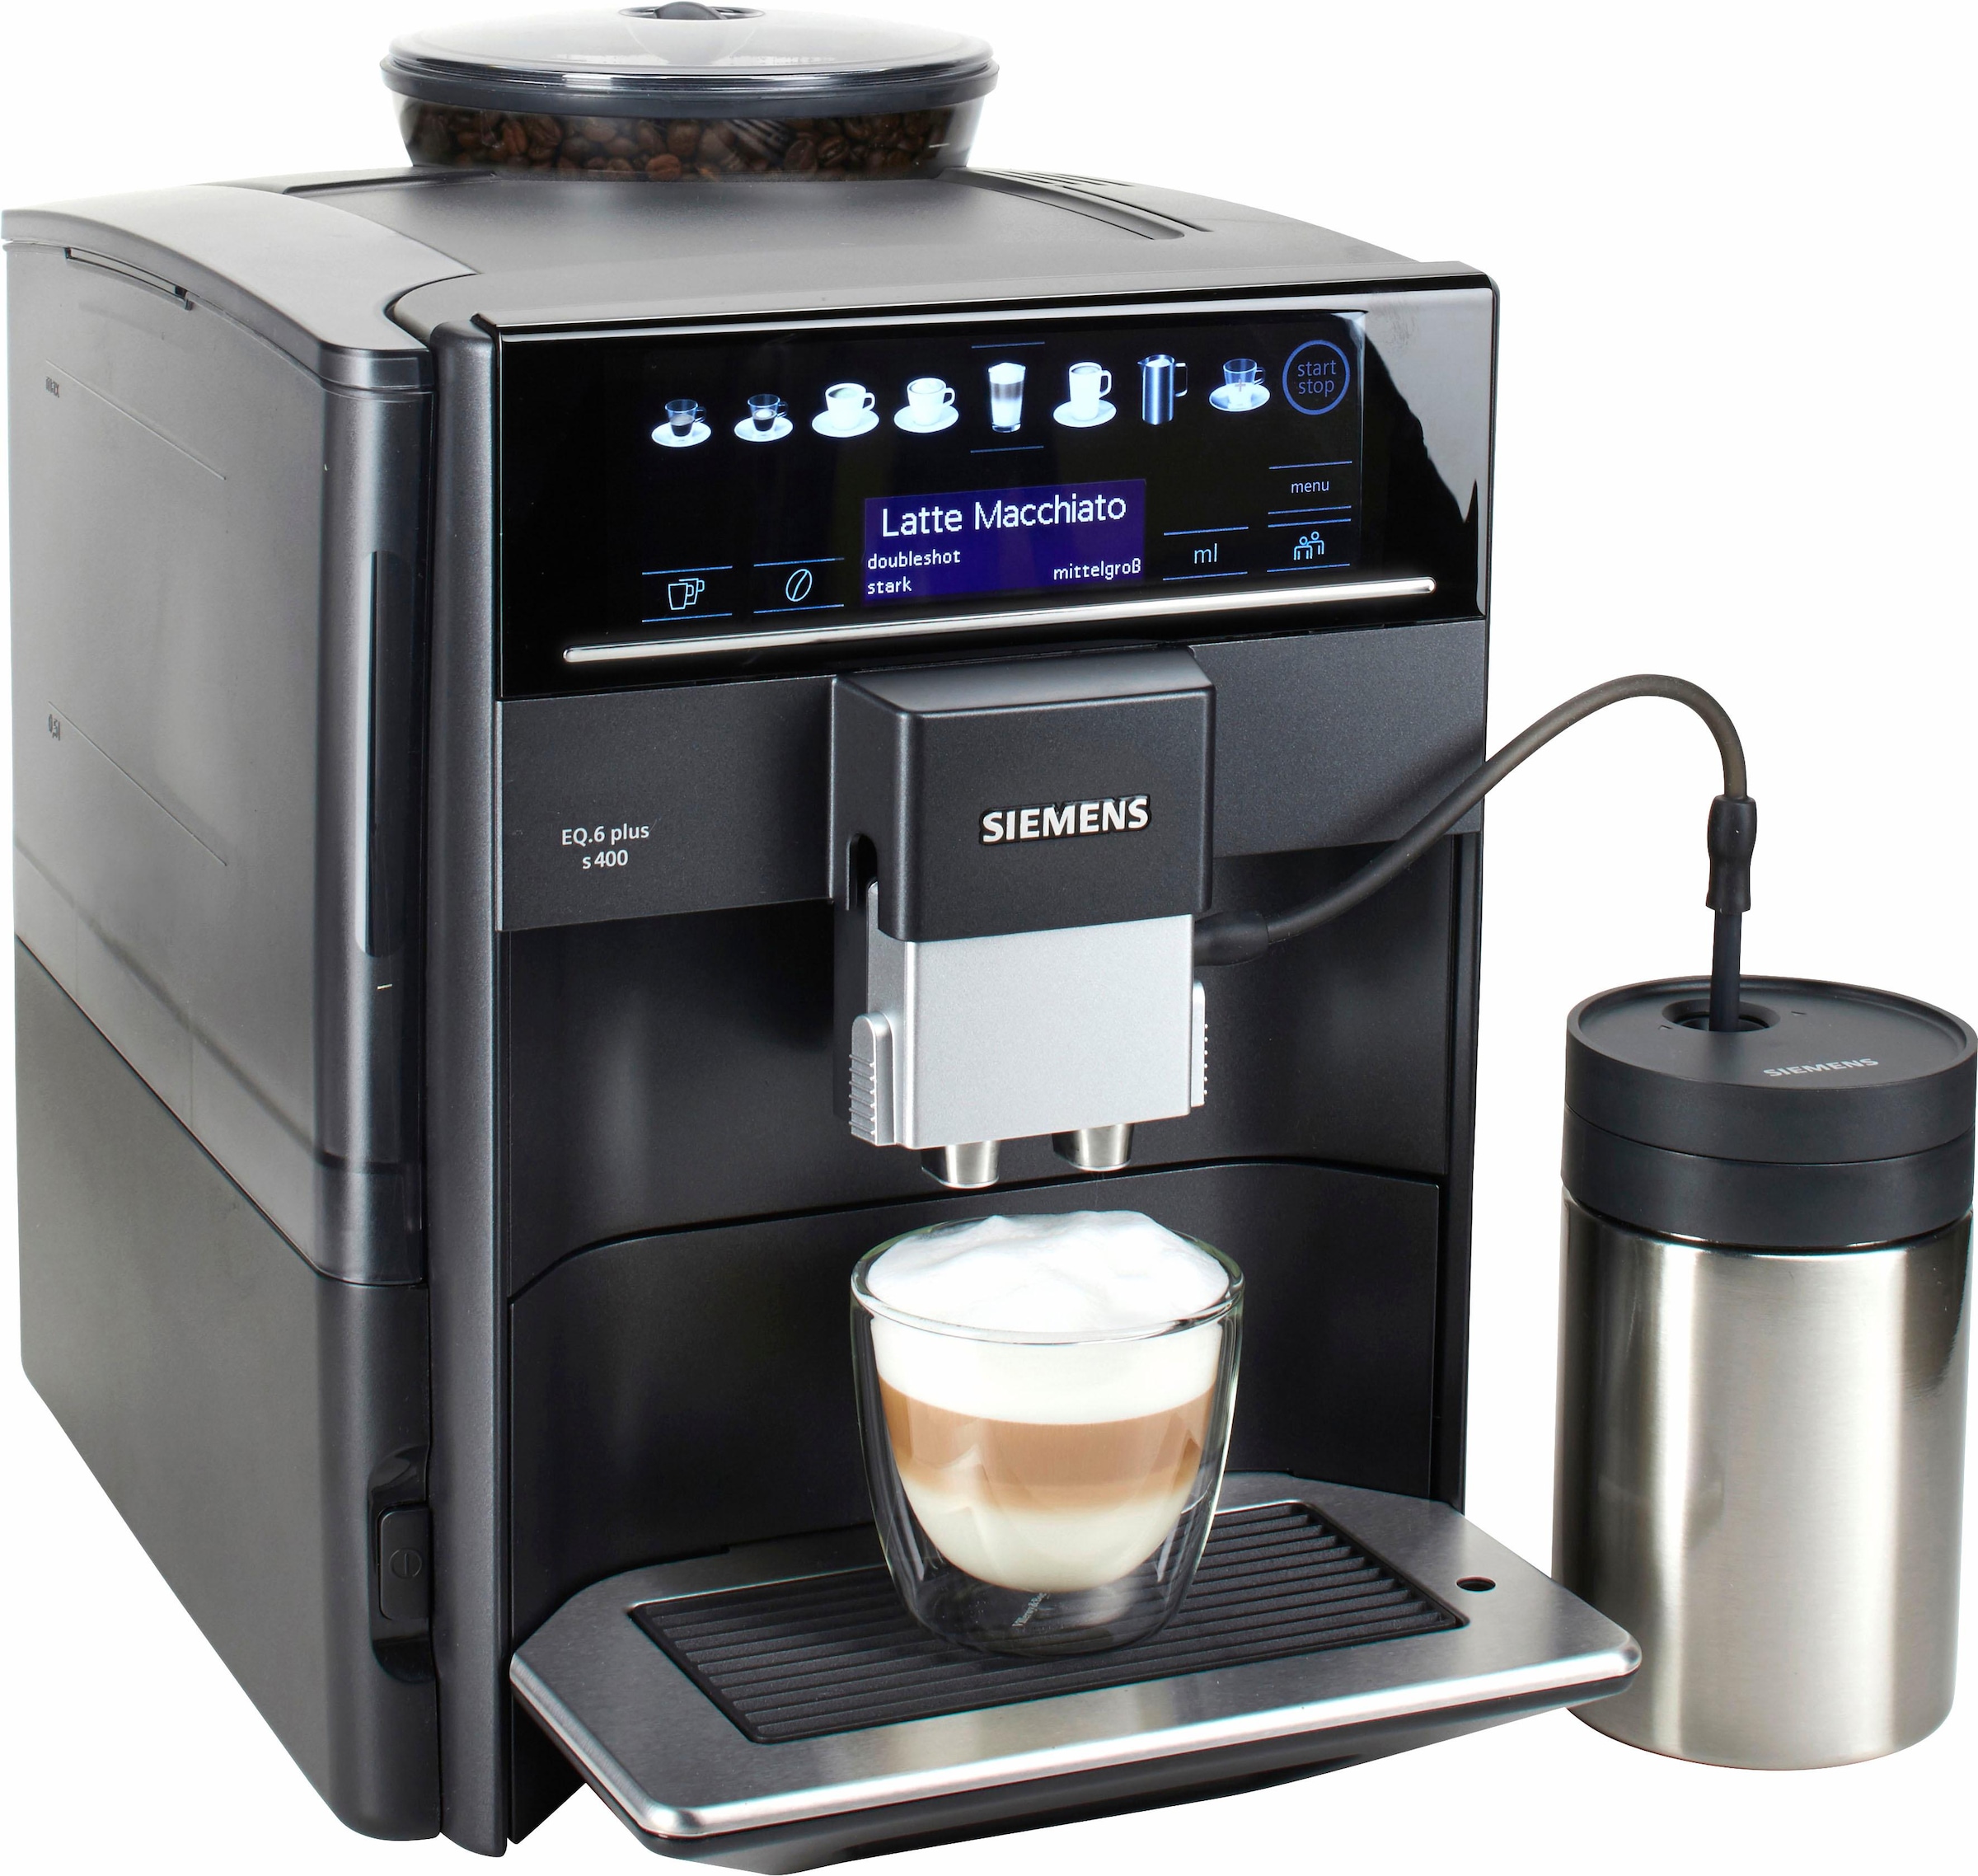 SIEMENS Kaffeevollautomat »EQ6 plus s400 TE654509DE, Doppeltassenfunktion, Keramikmahlwerk«, viele Kaffeespezialitäten, automatische Dampfreinigung, saphirschwarz